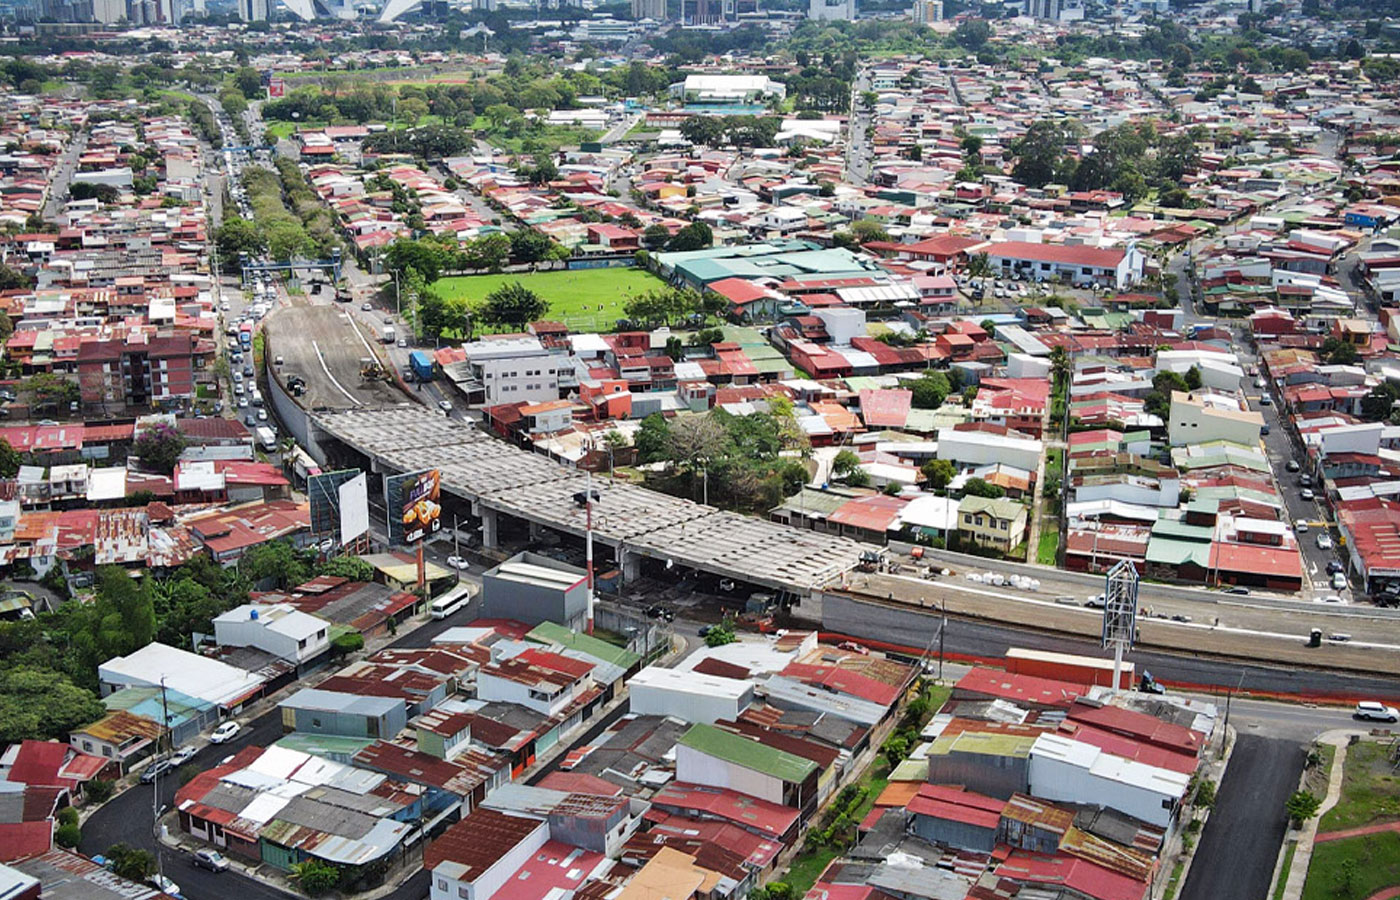 Costa Rica: Paso elevado entre Hatillo 3 y 4 se habilitará a finales de julio